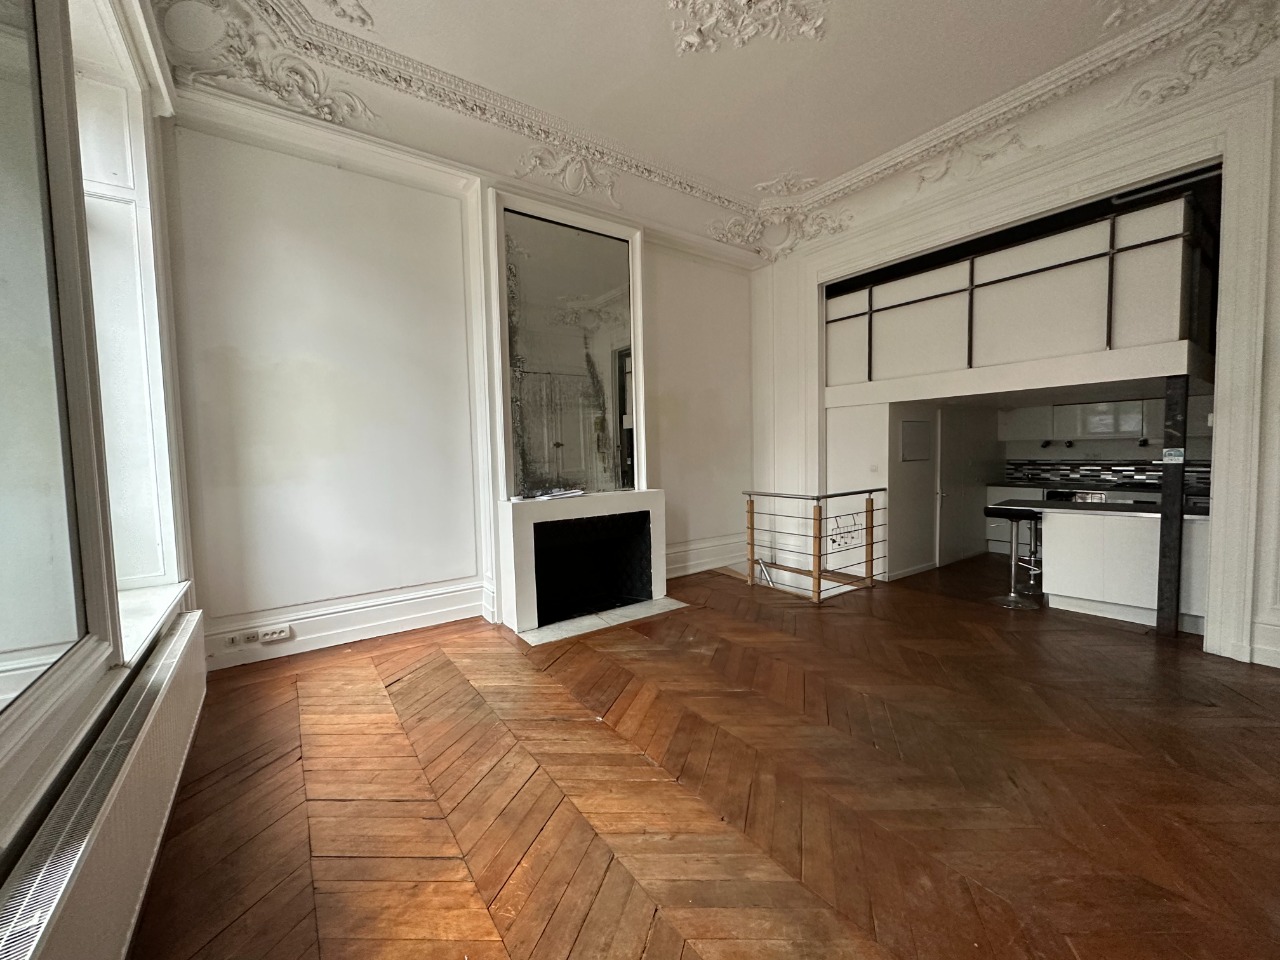 Vente appartement 59000 Lille - Type 3 bis République Beaux Arts Lille